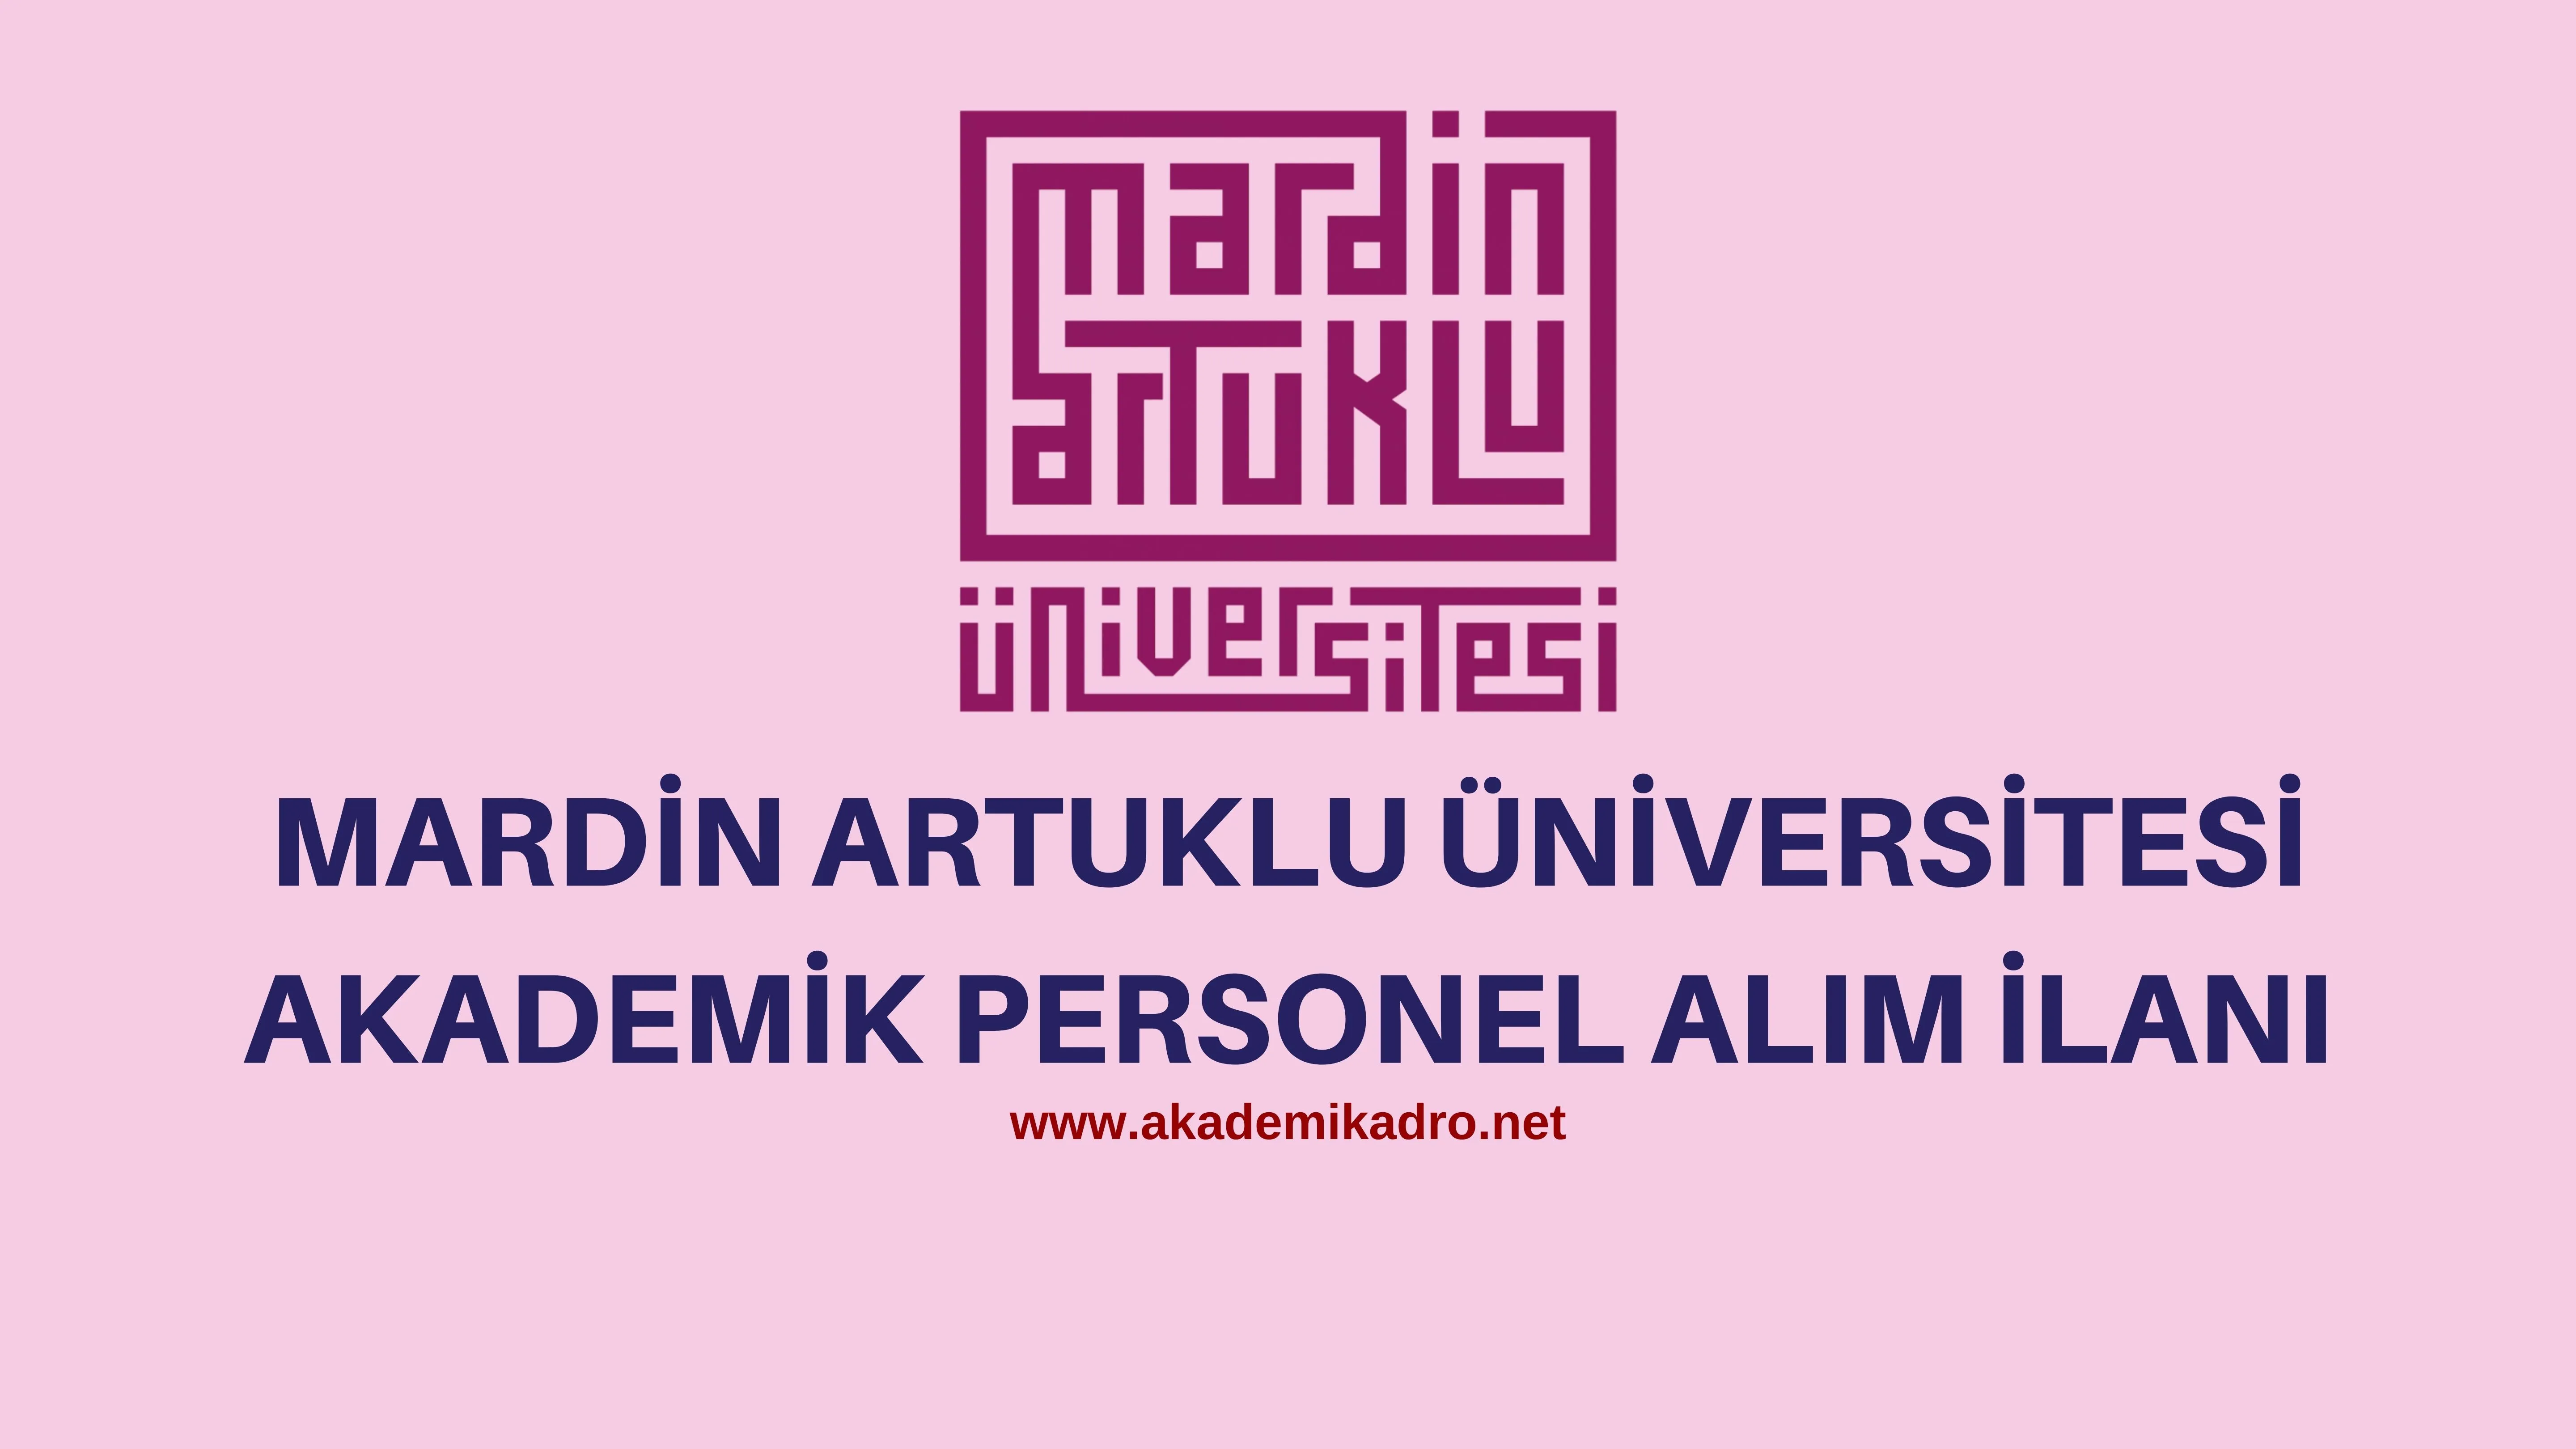 Mardin Artuklu Üniversitesi birçok alandan 11 Öğretim üyesi alacak.